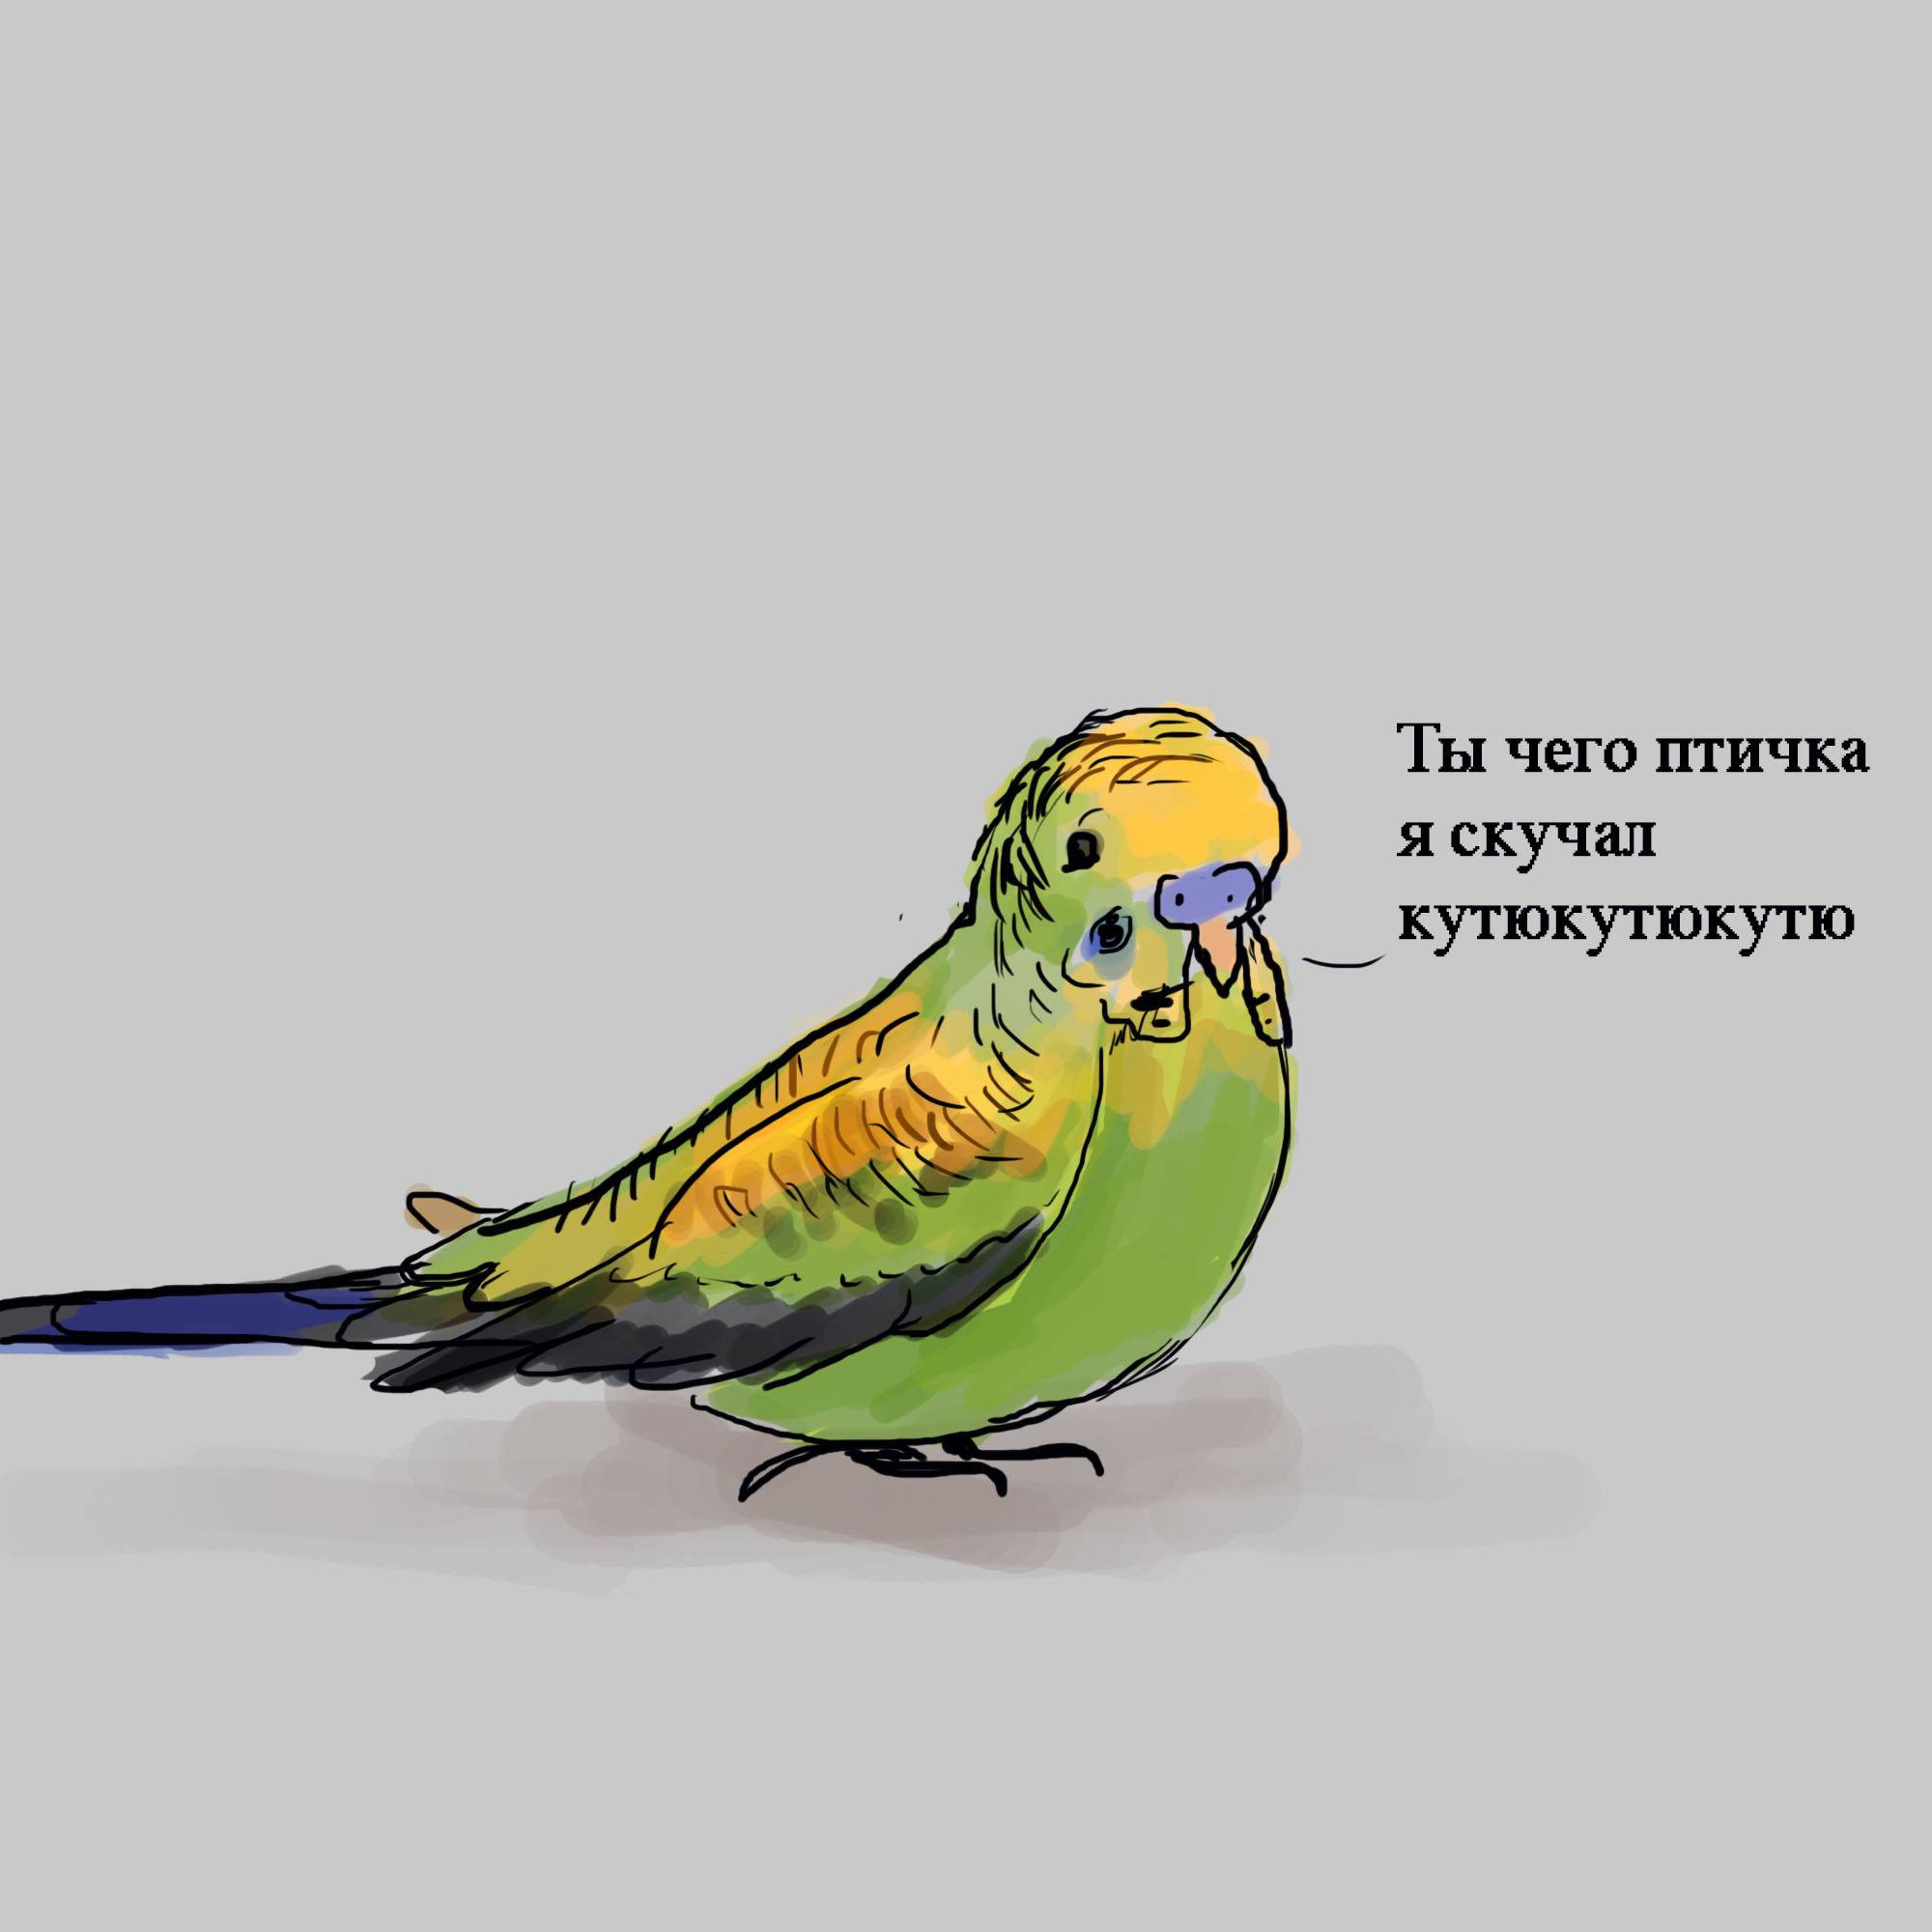 Как научить попугая разговаривать за 5 минут в домашних условиях